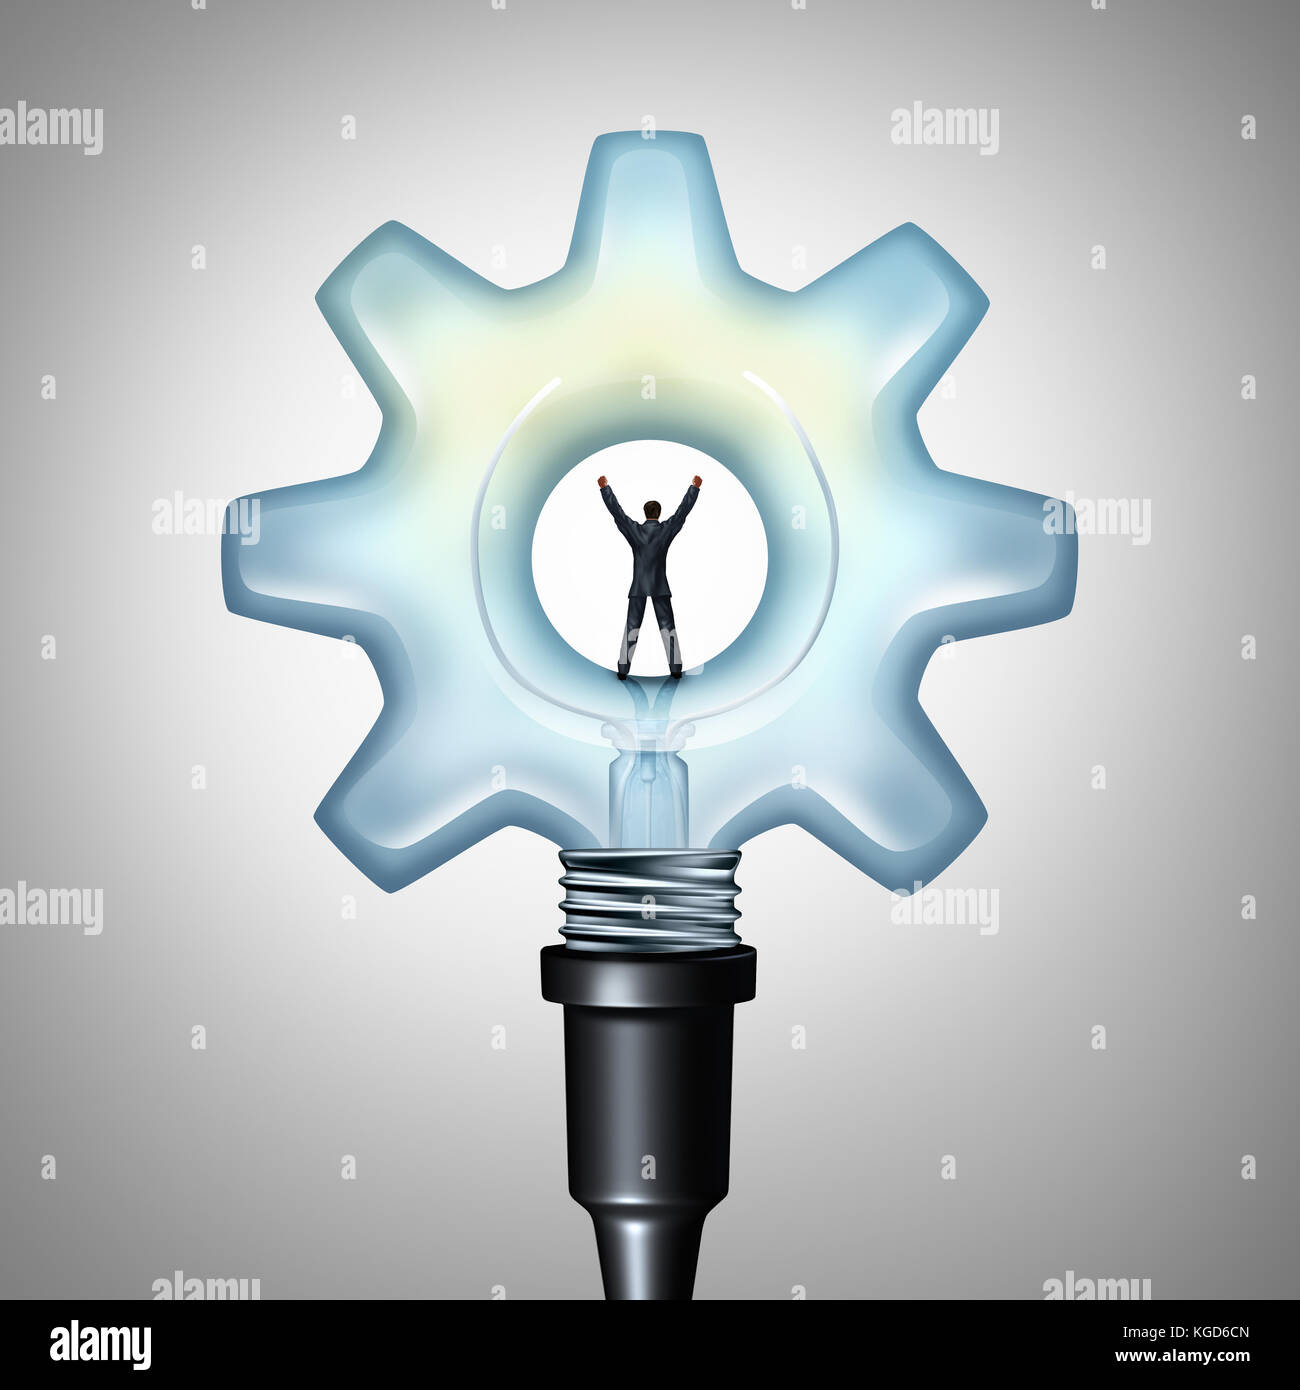 Business kreative Energie und helle Industrie Idee Konzept als Unternehmer stehen auf einer Glühlampe als Maschine Gang geprägt. Stockfoto